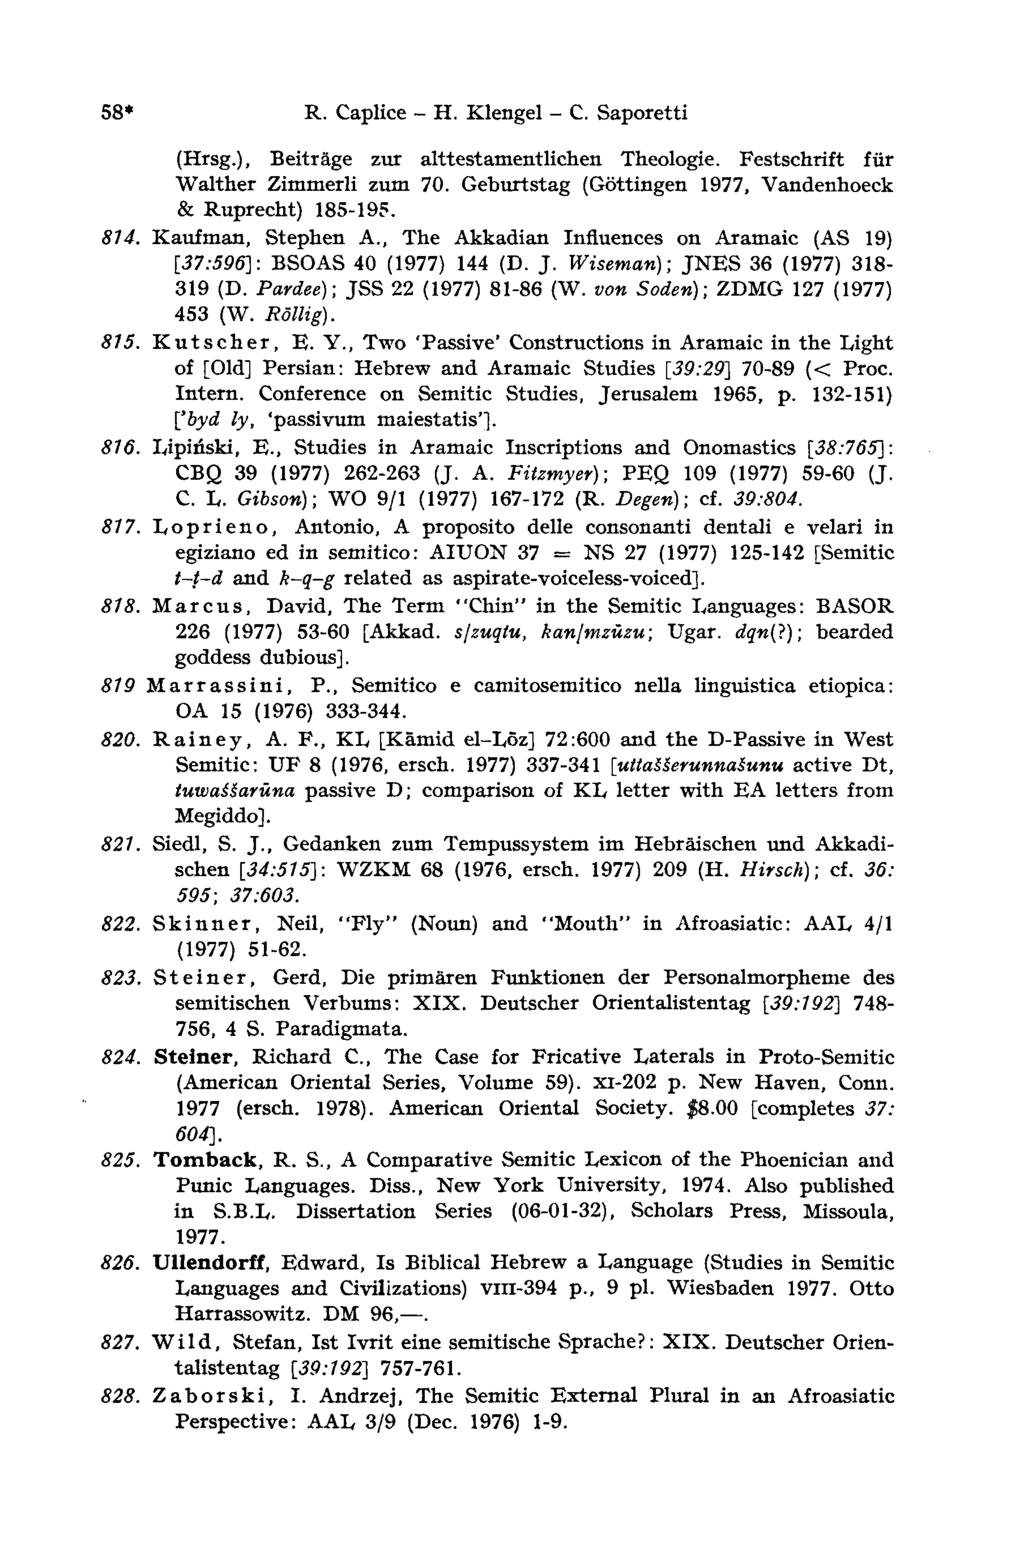 58* R. Caplice - H. Klengel - С. Sapore tti (Hrsg.), Beiträge zur alttestamentlichen Theologie. Festschrift für Walther Zimmerli zum 70. Geburtstag (Göttingen 1977, Vandenhoeck & Ruprecht) 185-195.